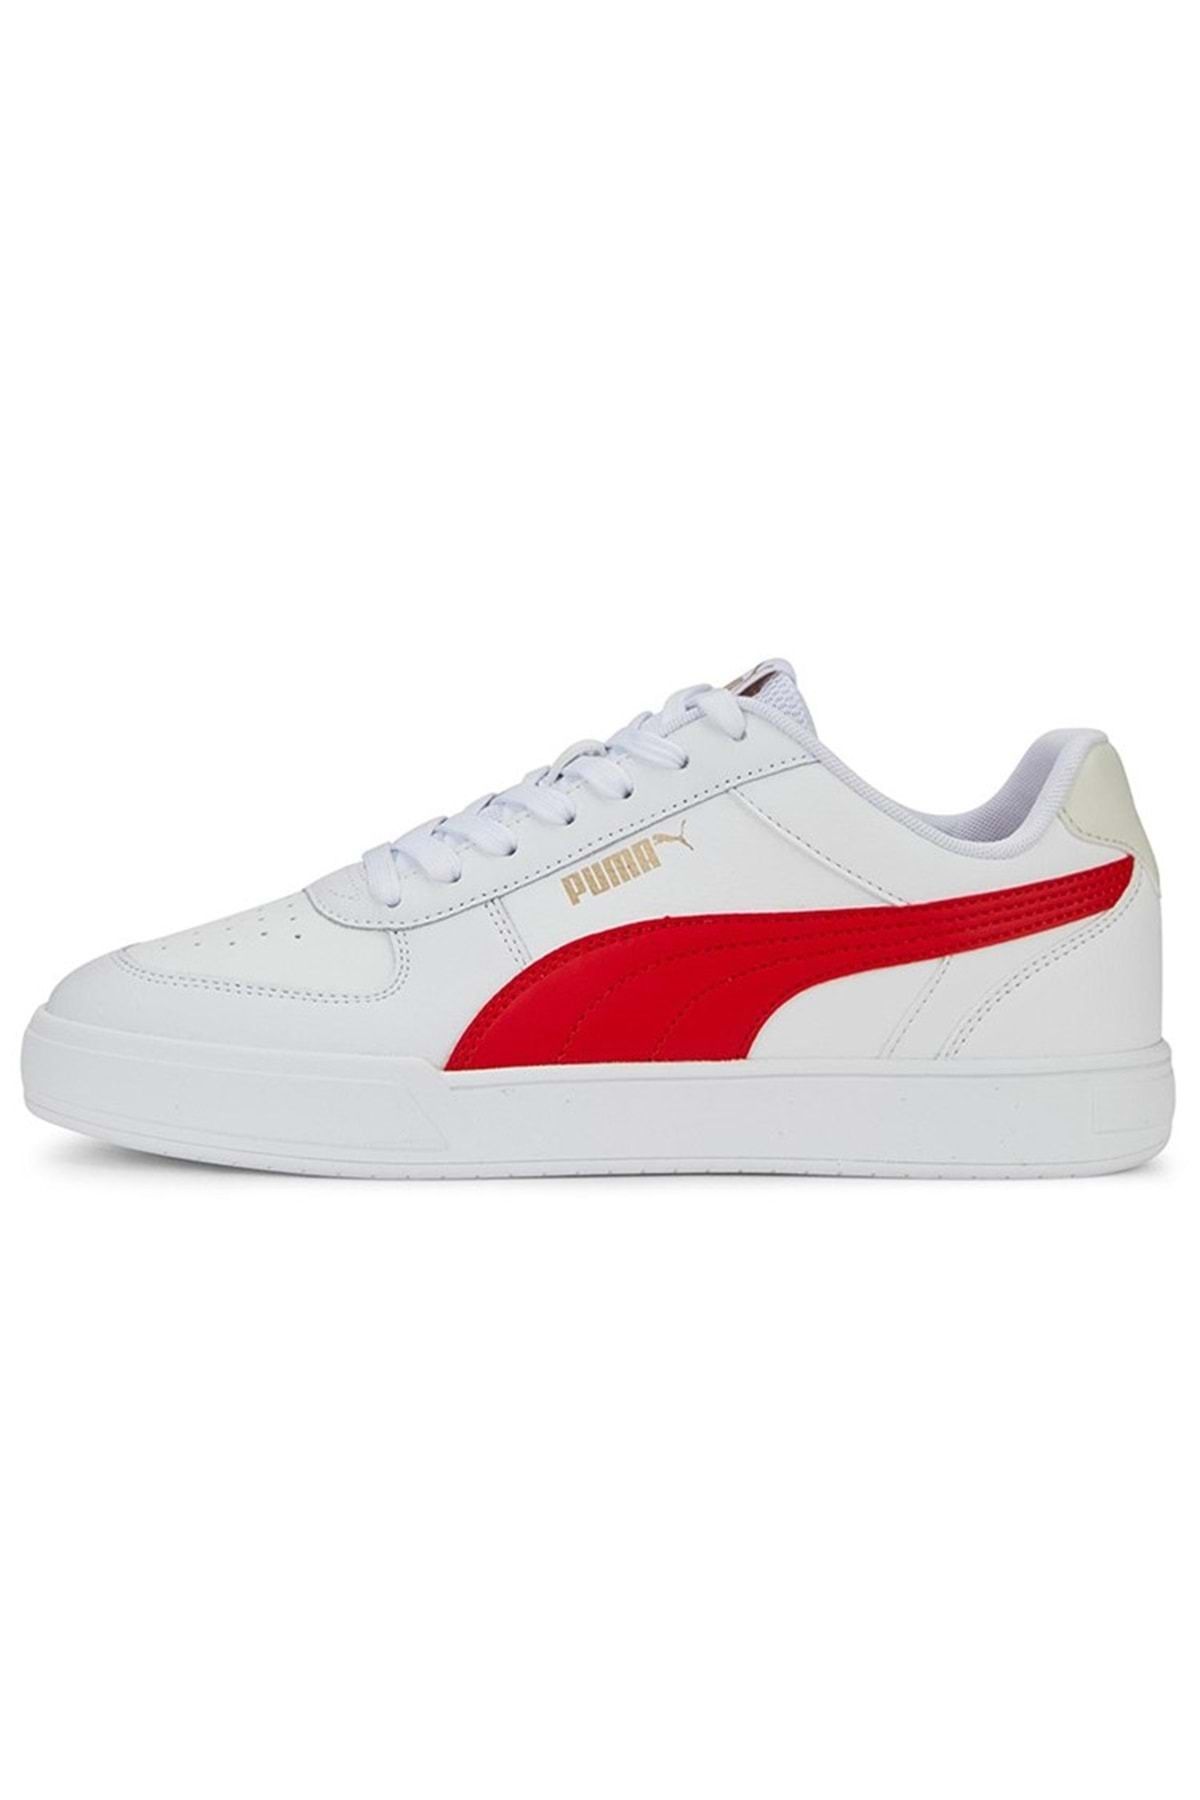 Puma Caven 380810-25 Erkek Spor Ayakkabı Beyaz-kırmızı